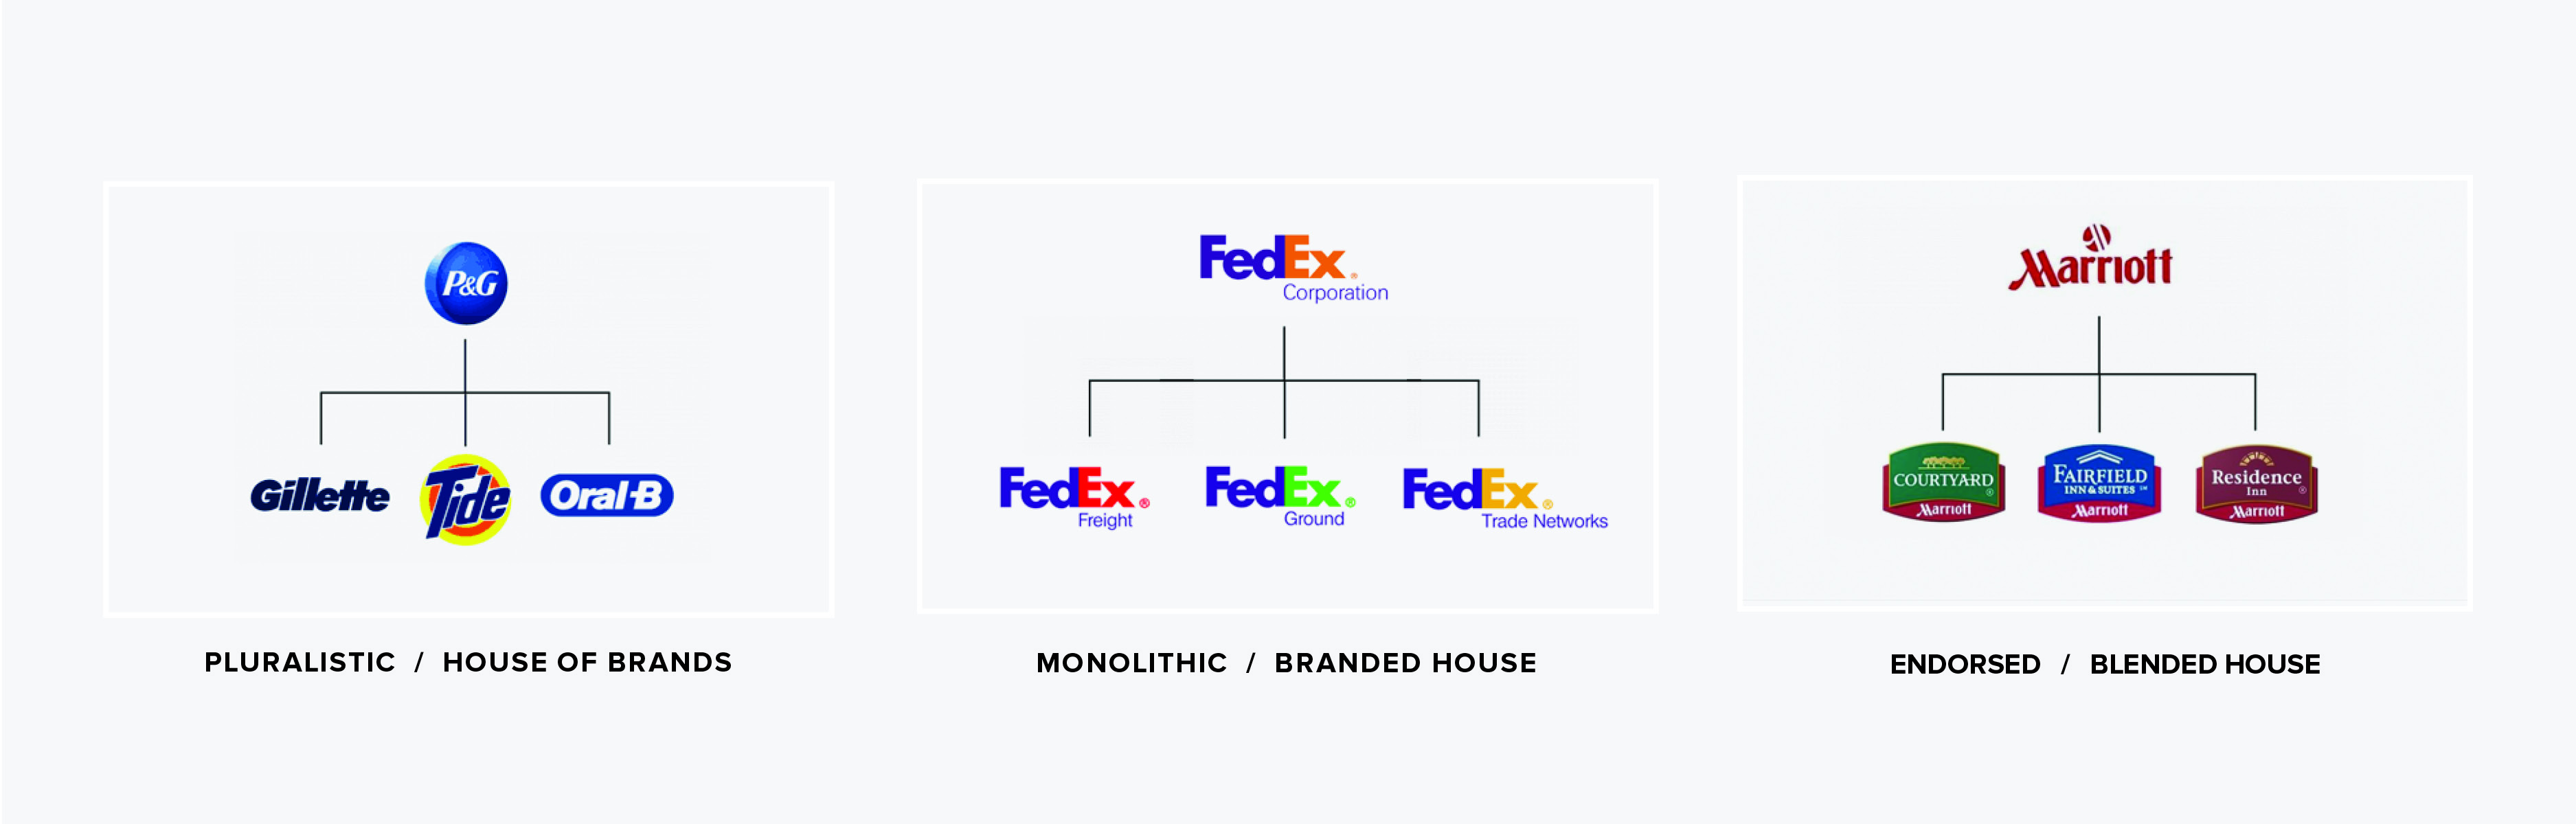 Brand Architecture Diagram